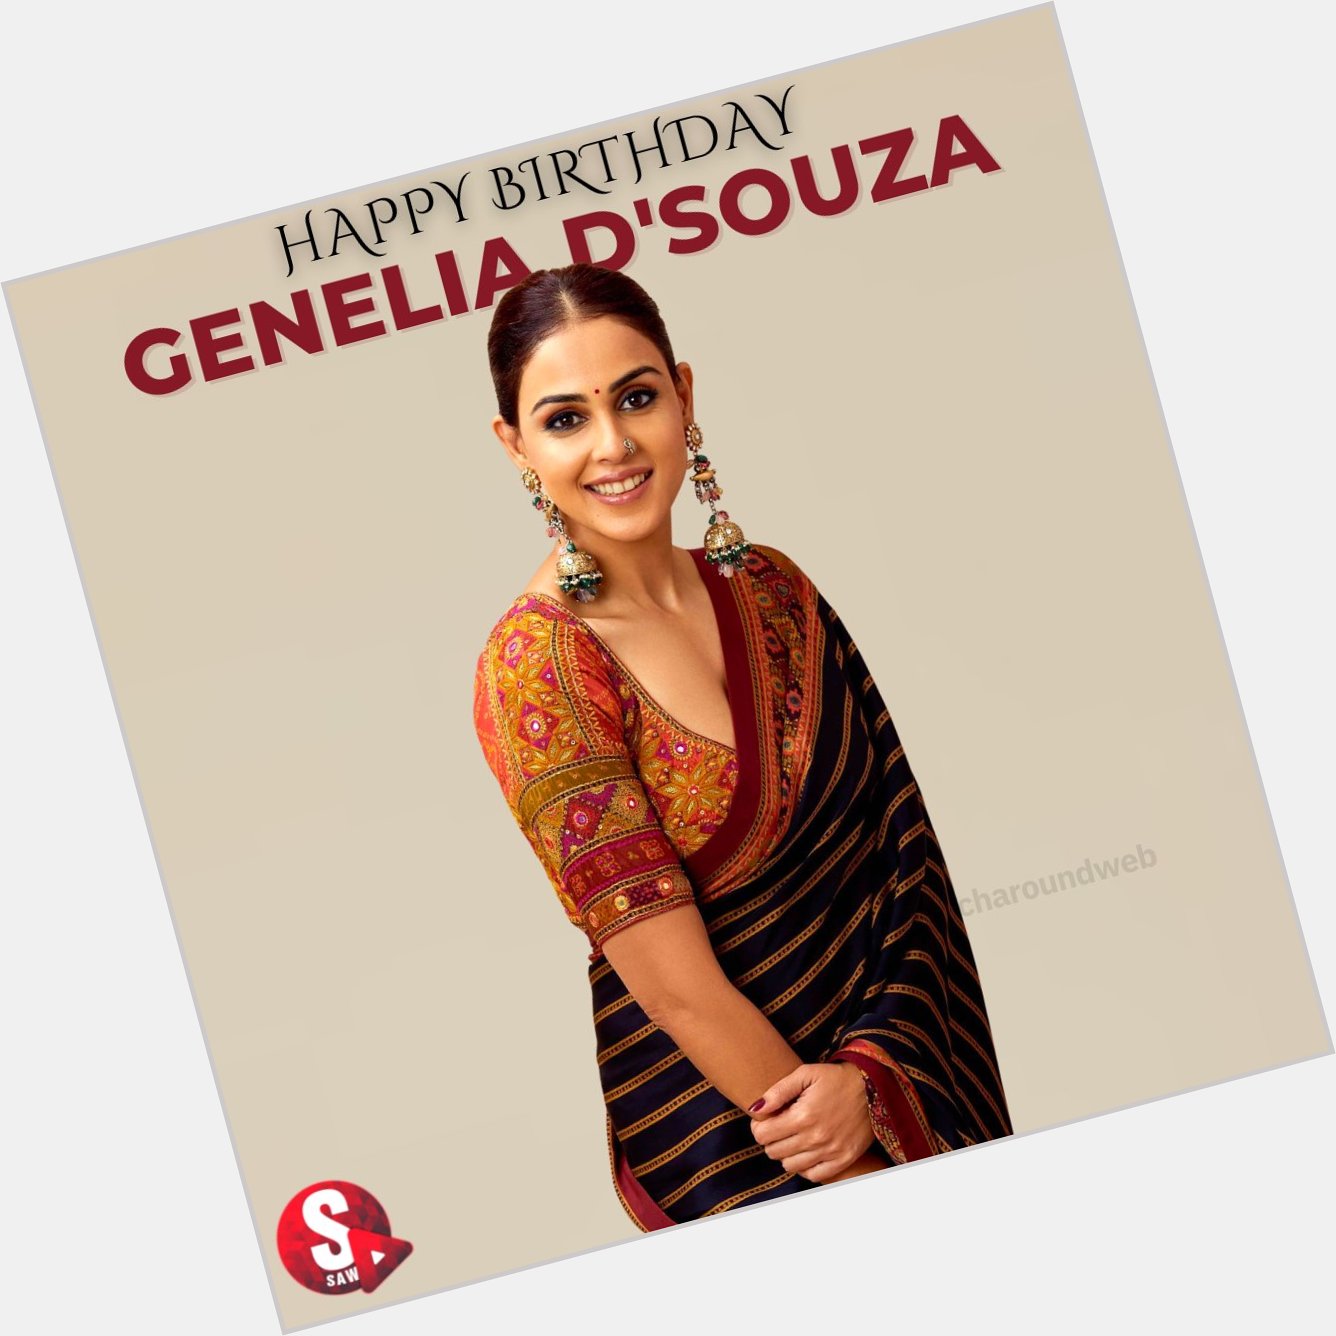  Happy Birthday Genelia D\souza       